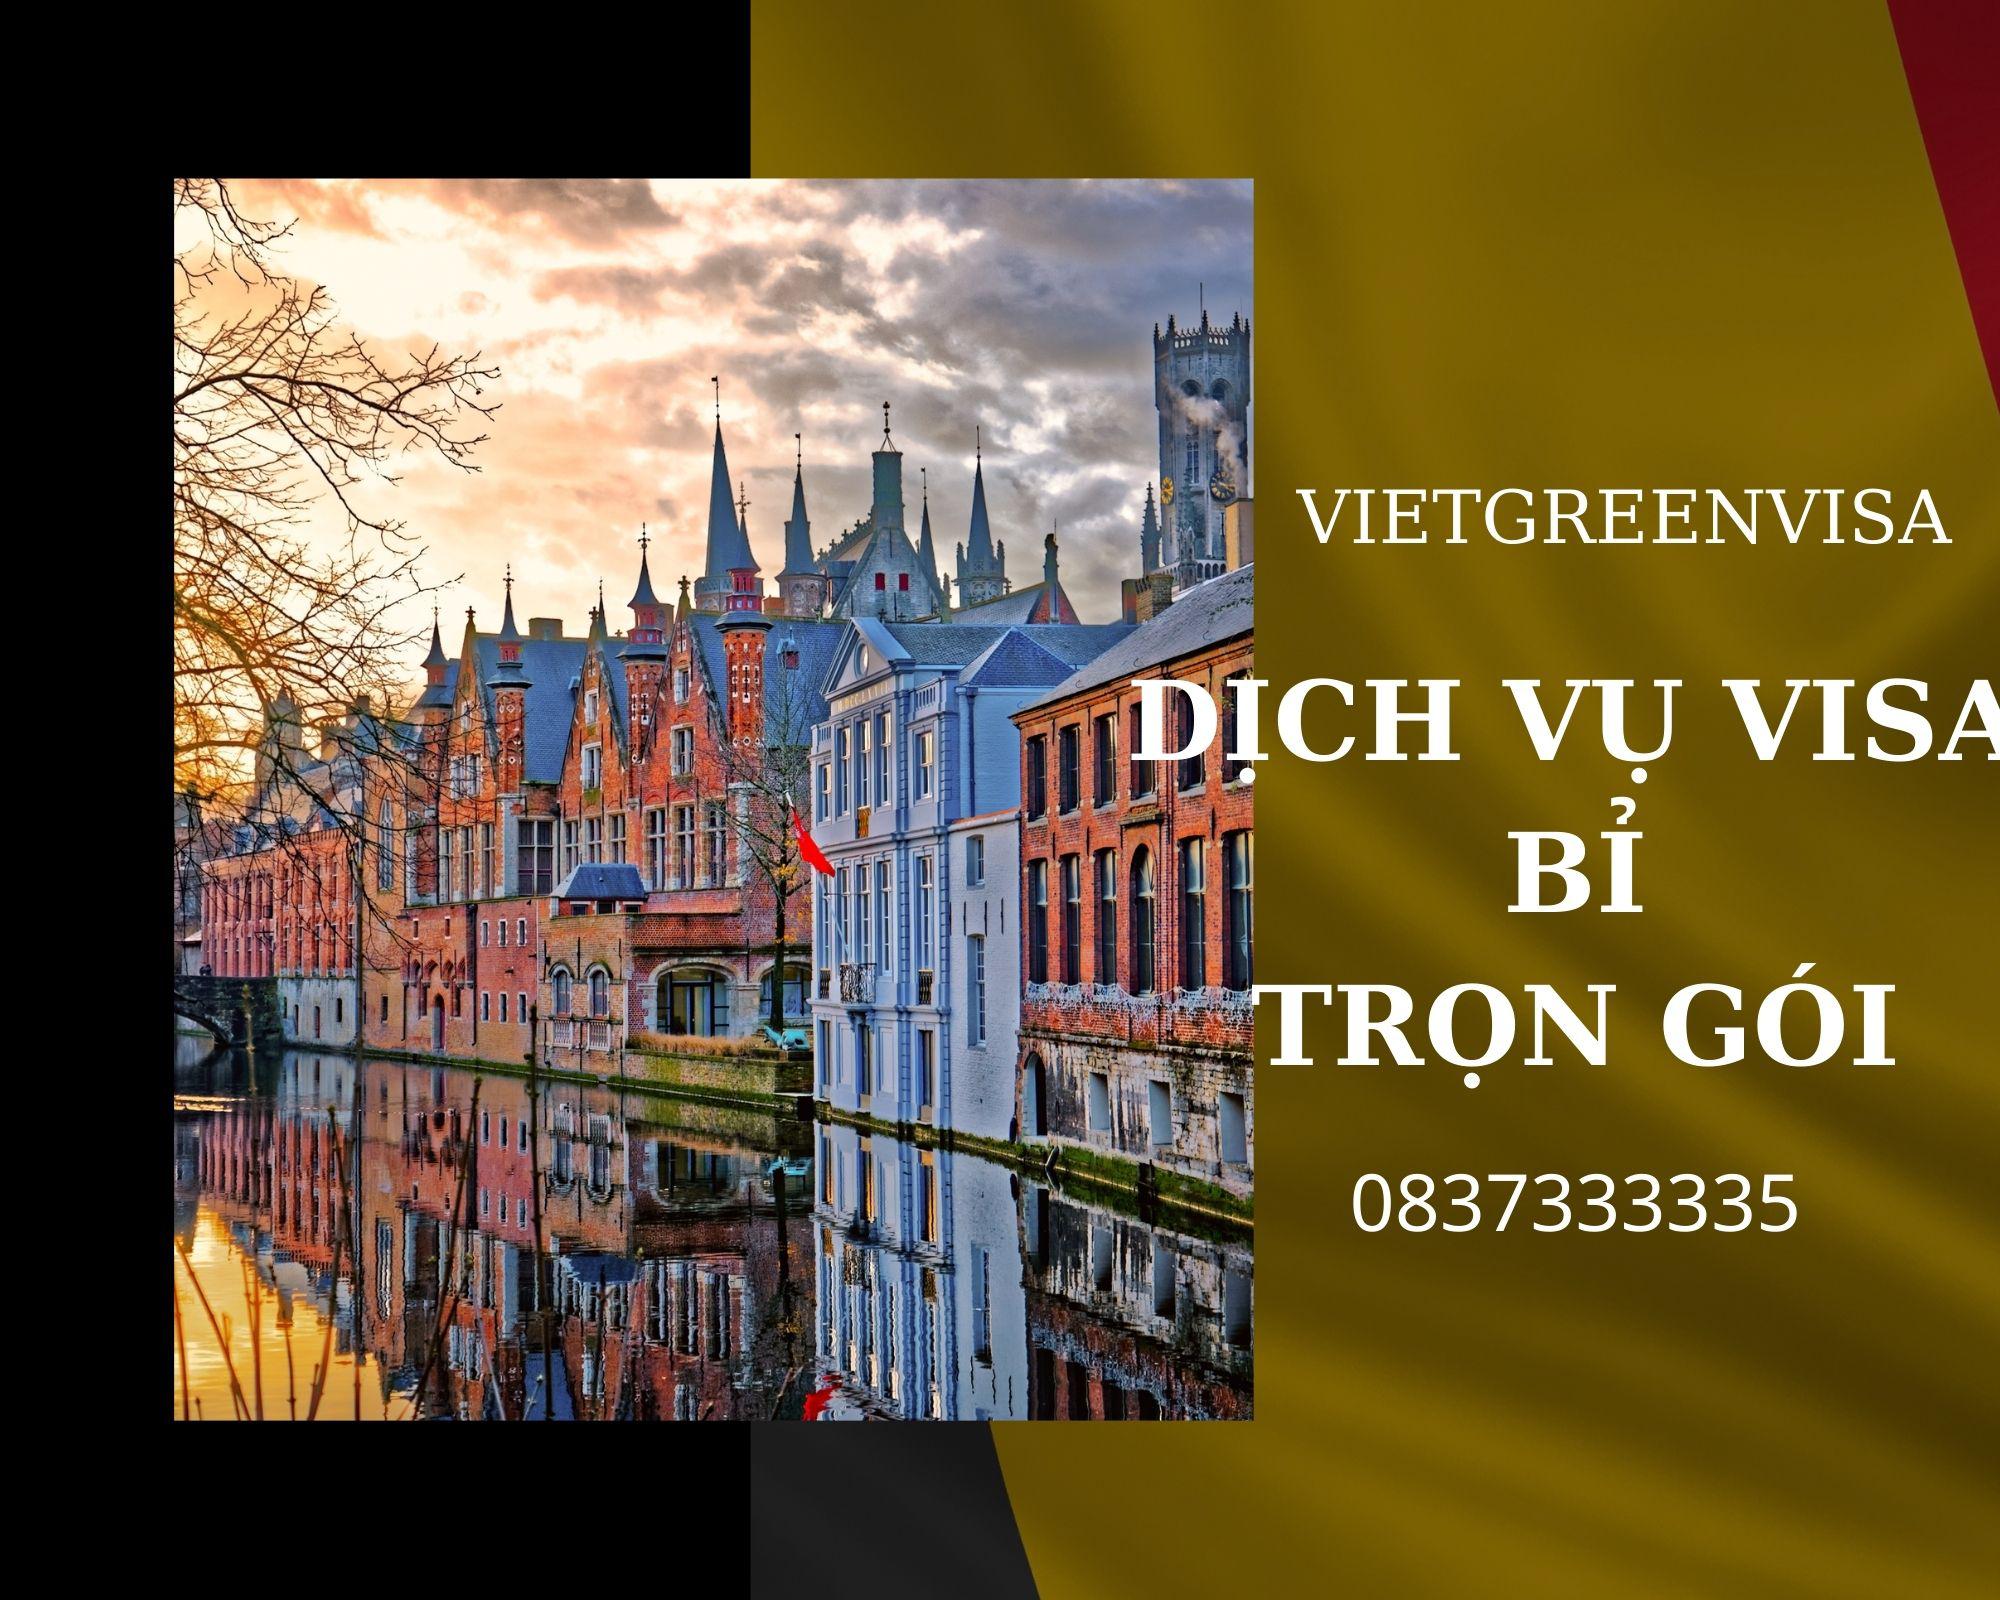 Hỗ trợ xin visa du lịch Bỉ trọn gói tại Viet Green Visa